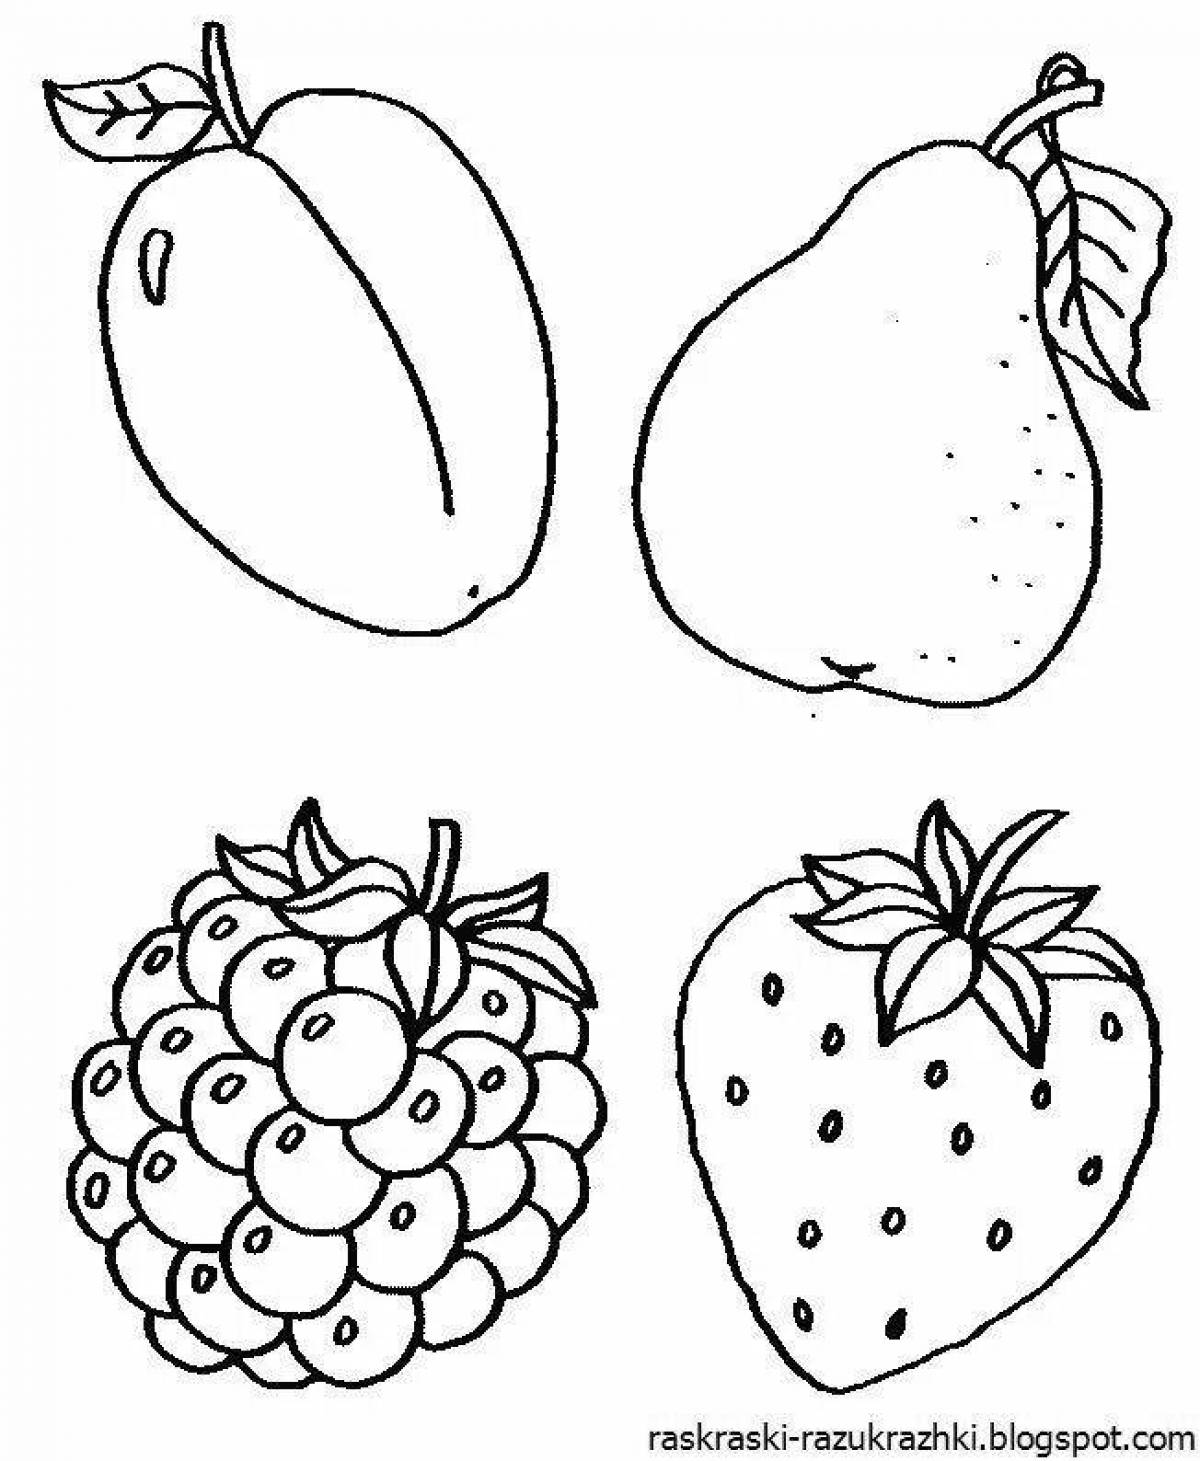 Юмористическая раскраска фрукты и овощи